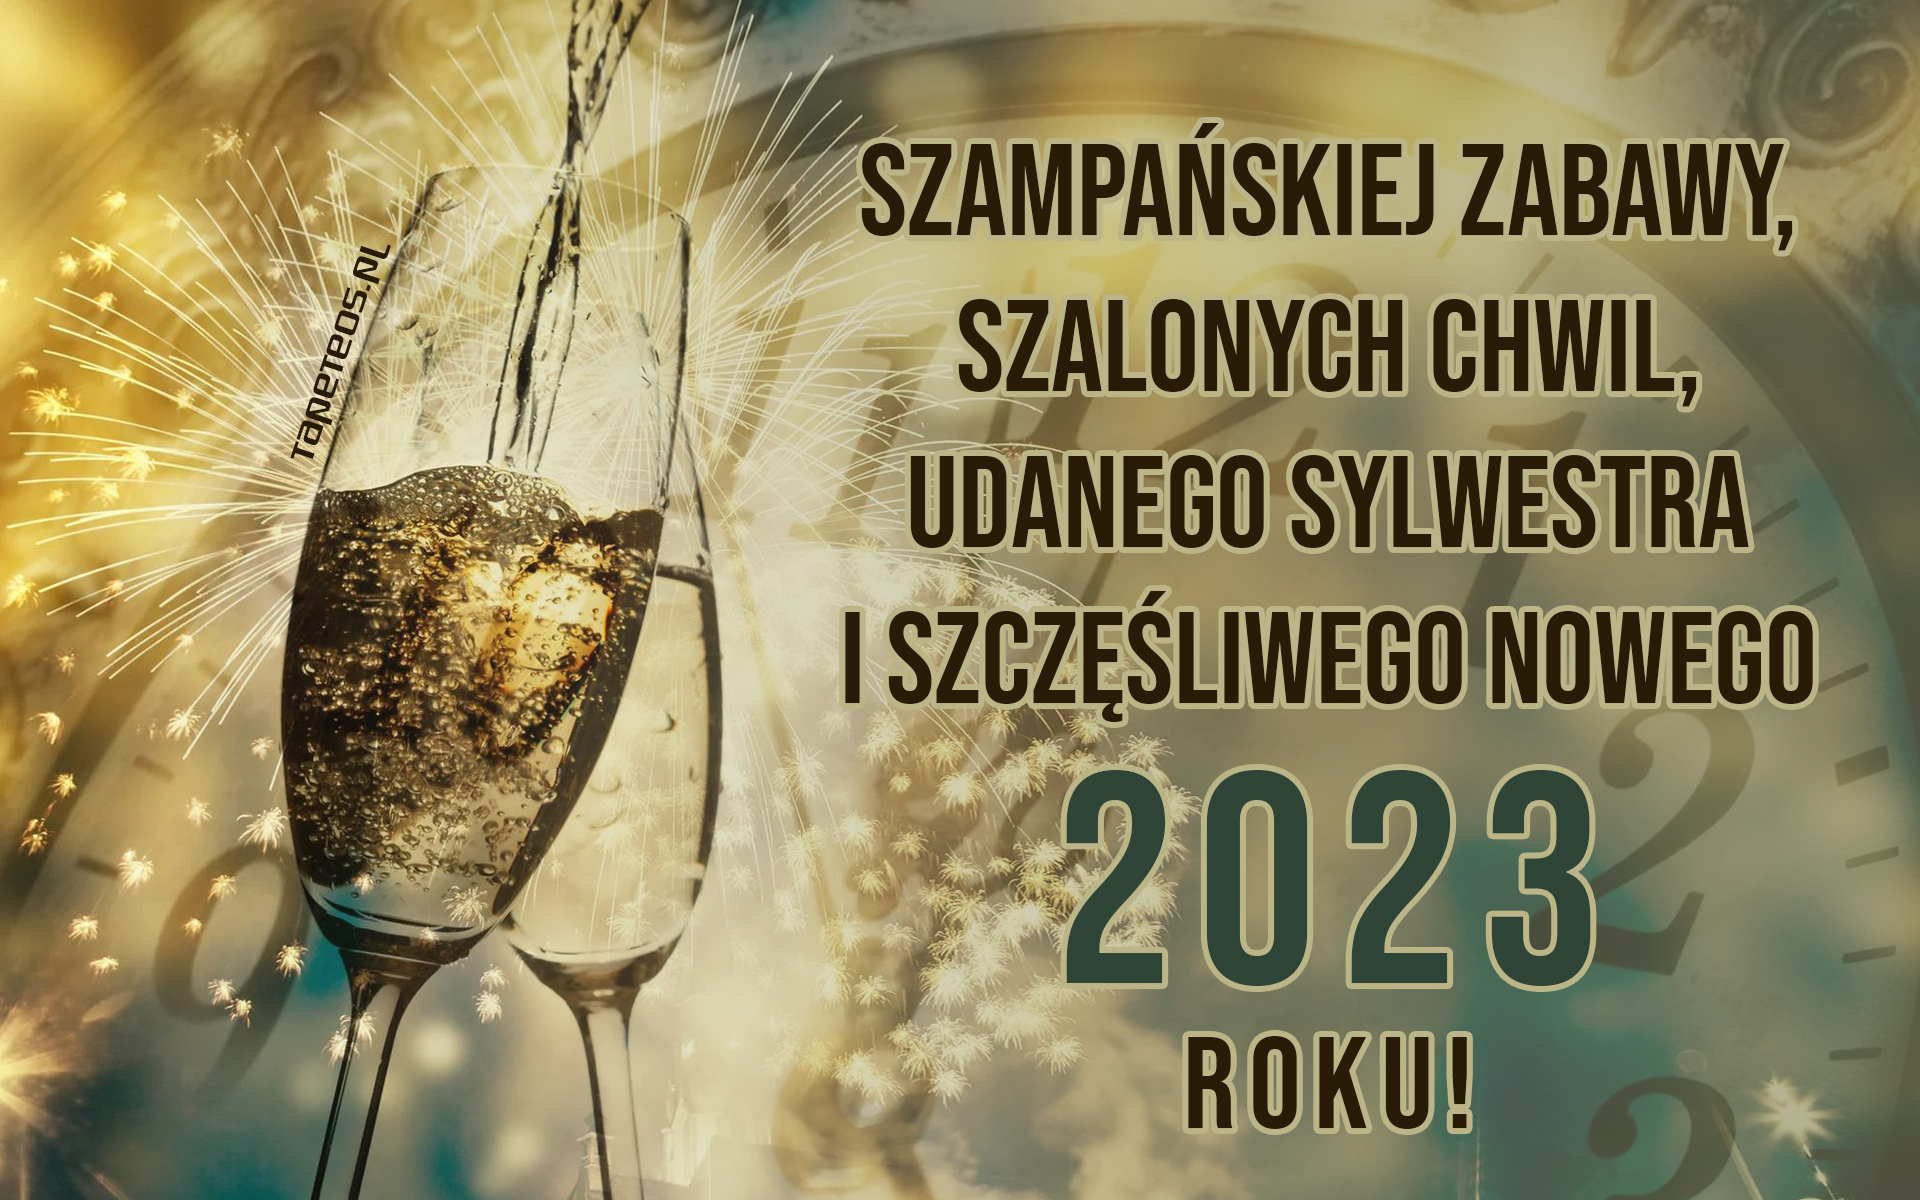 Sylwester, Nowy Rok, New Year 1183 Fajerwerki, Zegar, Kieliszki Szampana, Zyczenia Noworoczne 2023, Szampanskiej zabawy ...